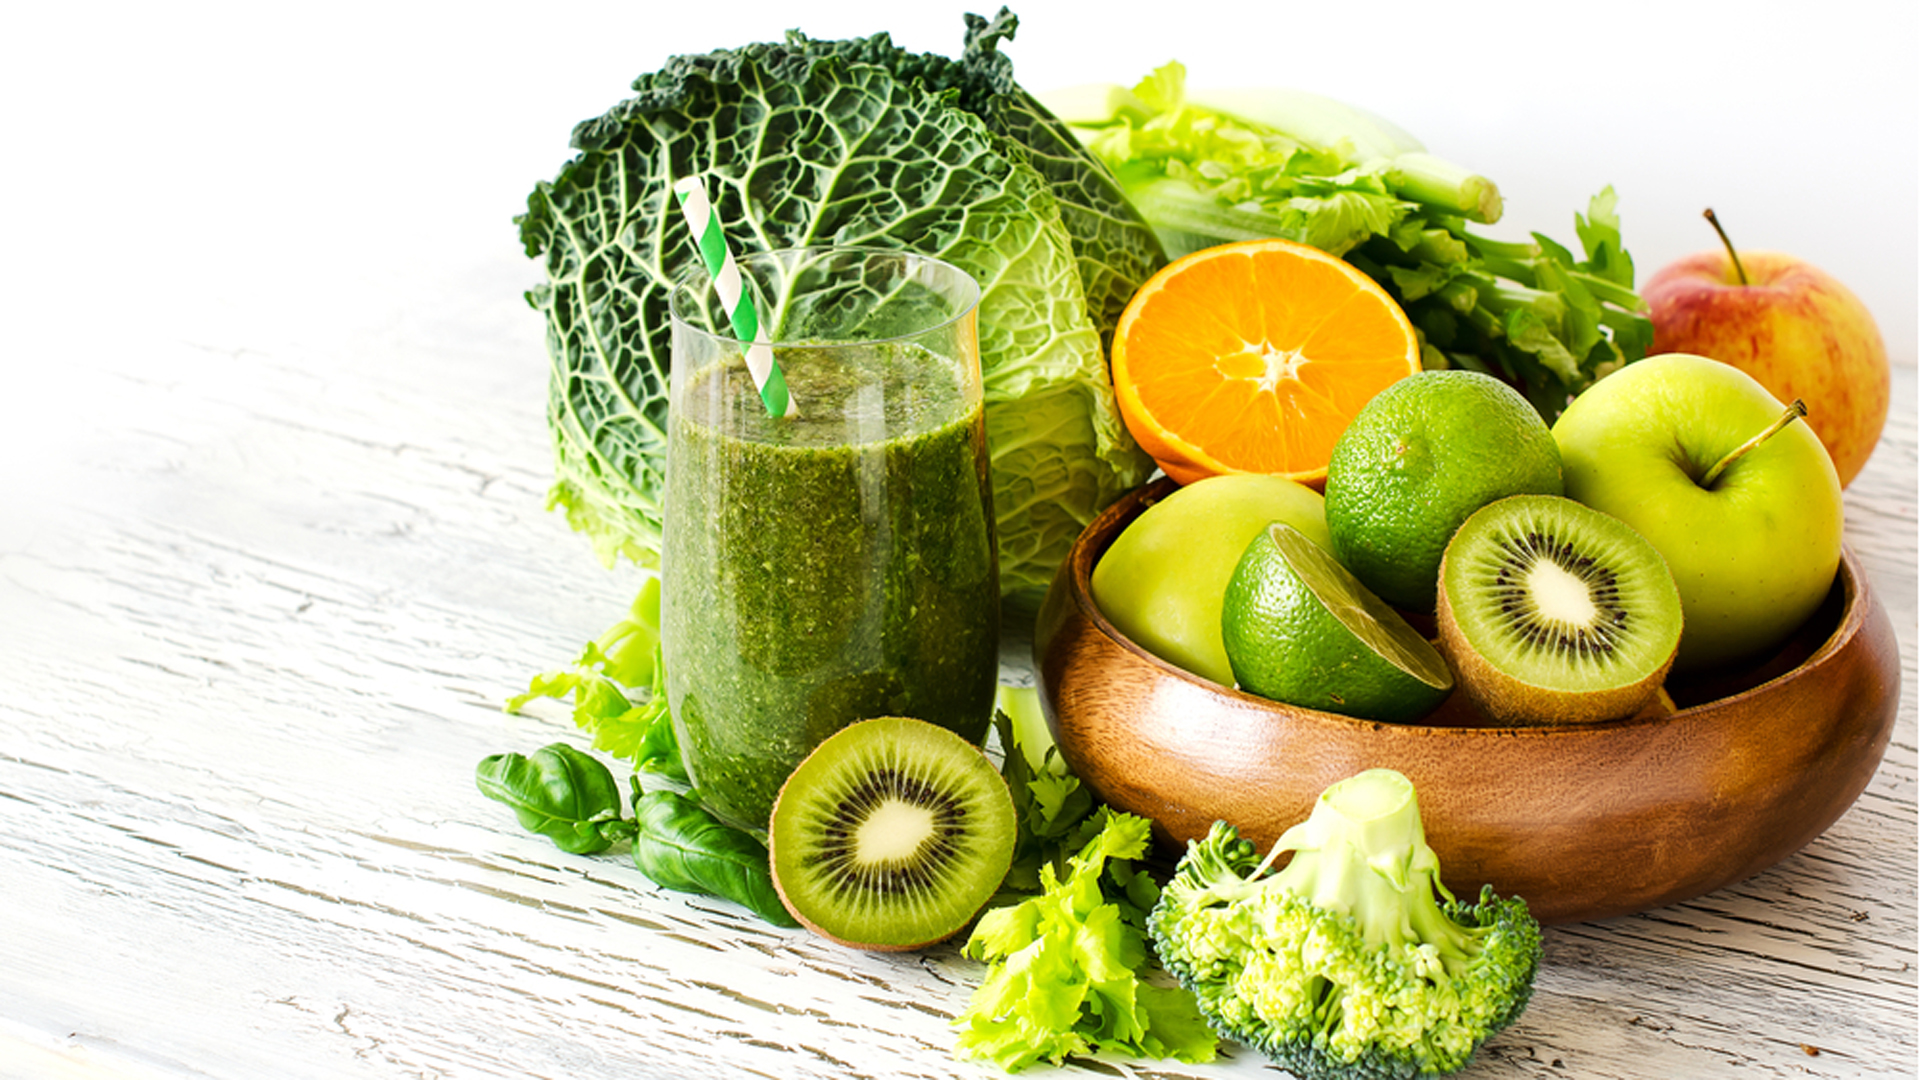 Las verduras, frutas y sus colores son fundamentales en la alimentación (Shutterstock)